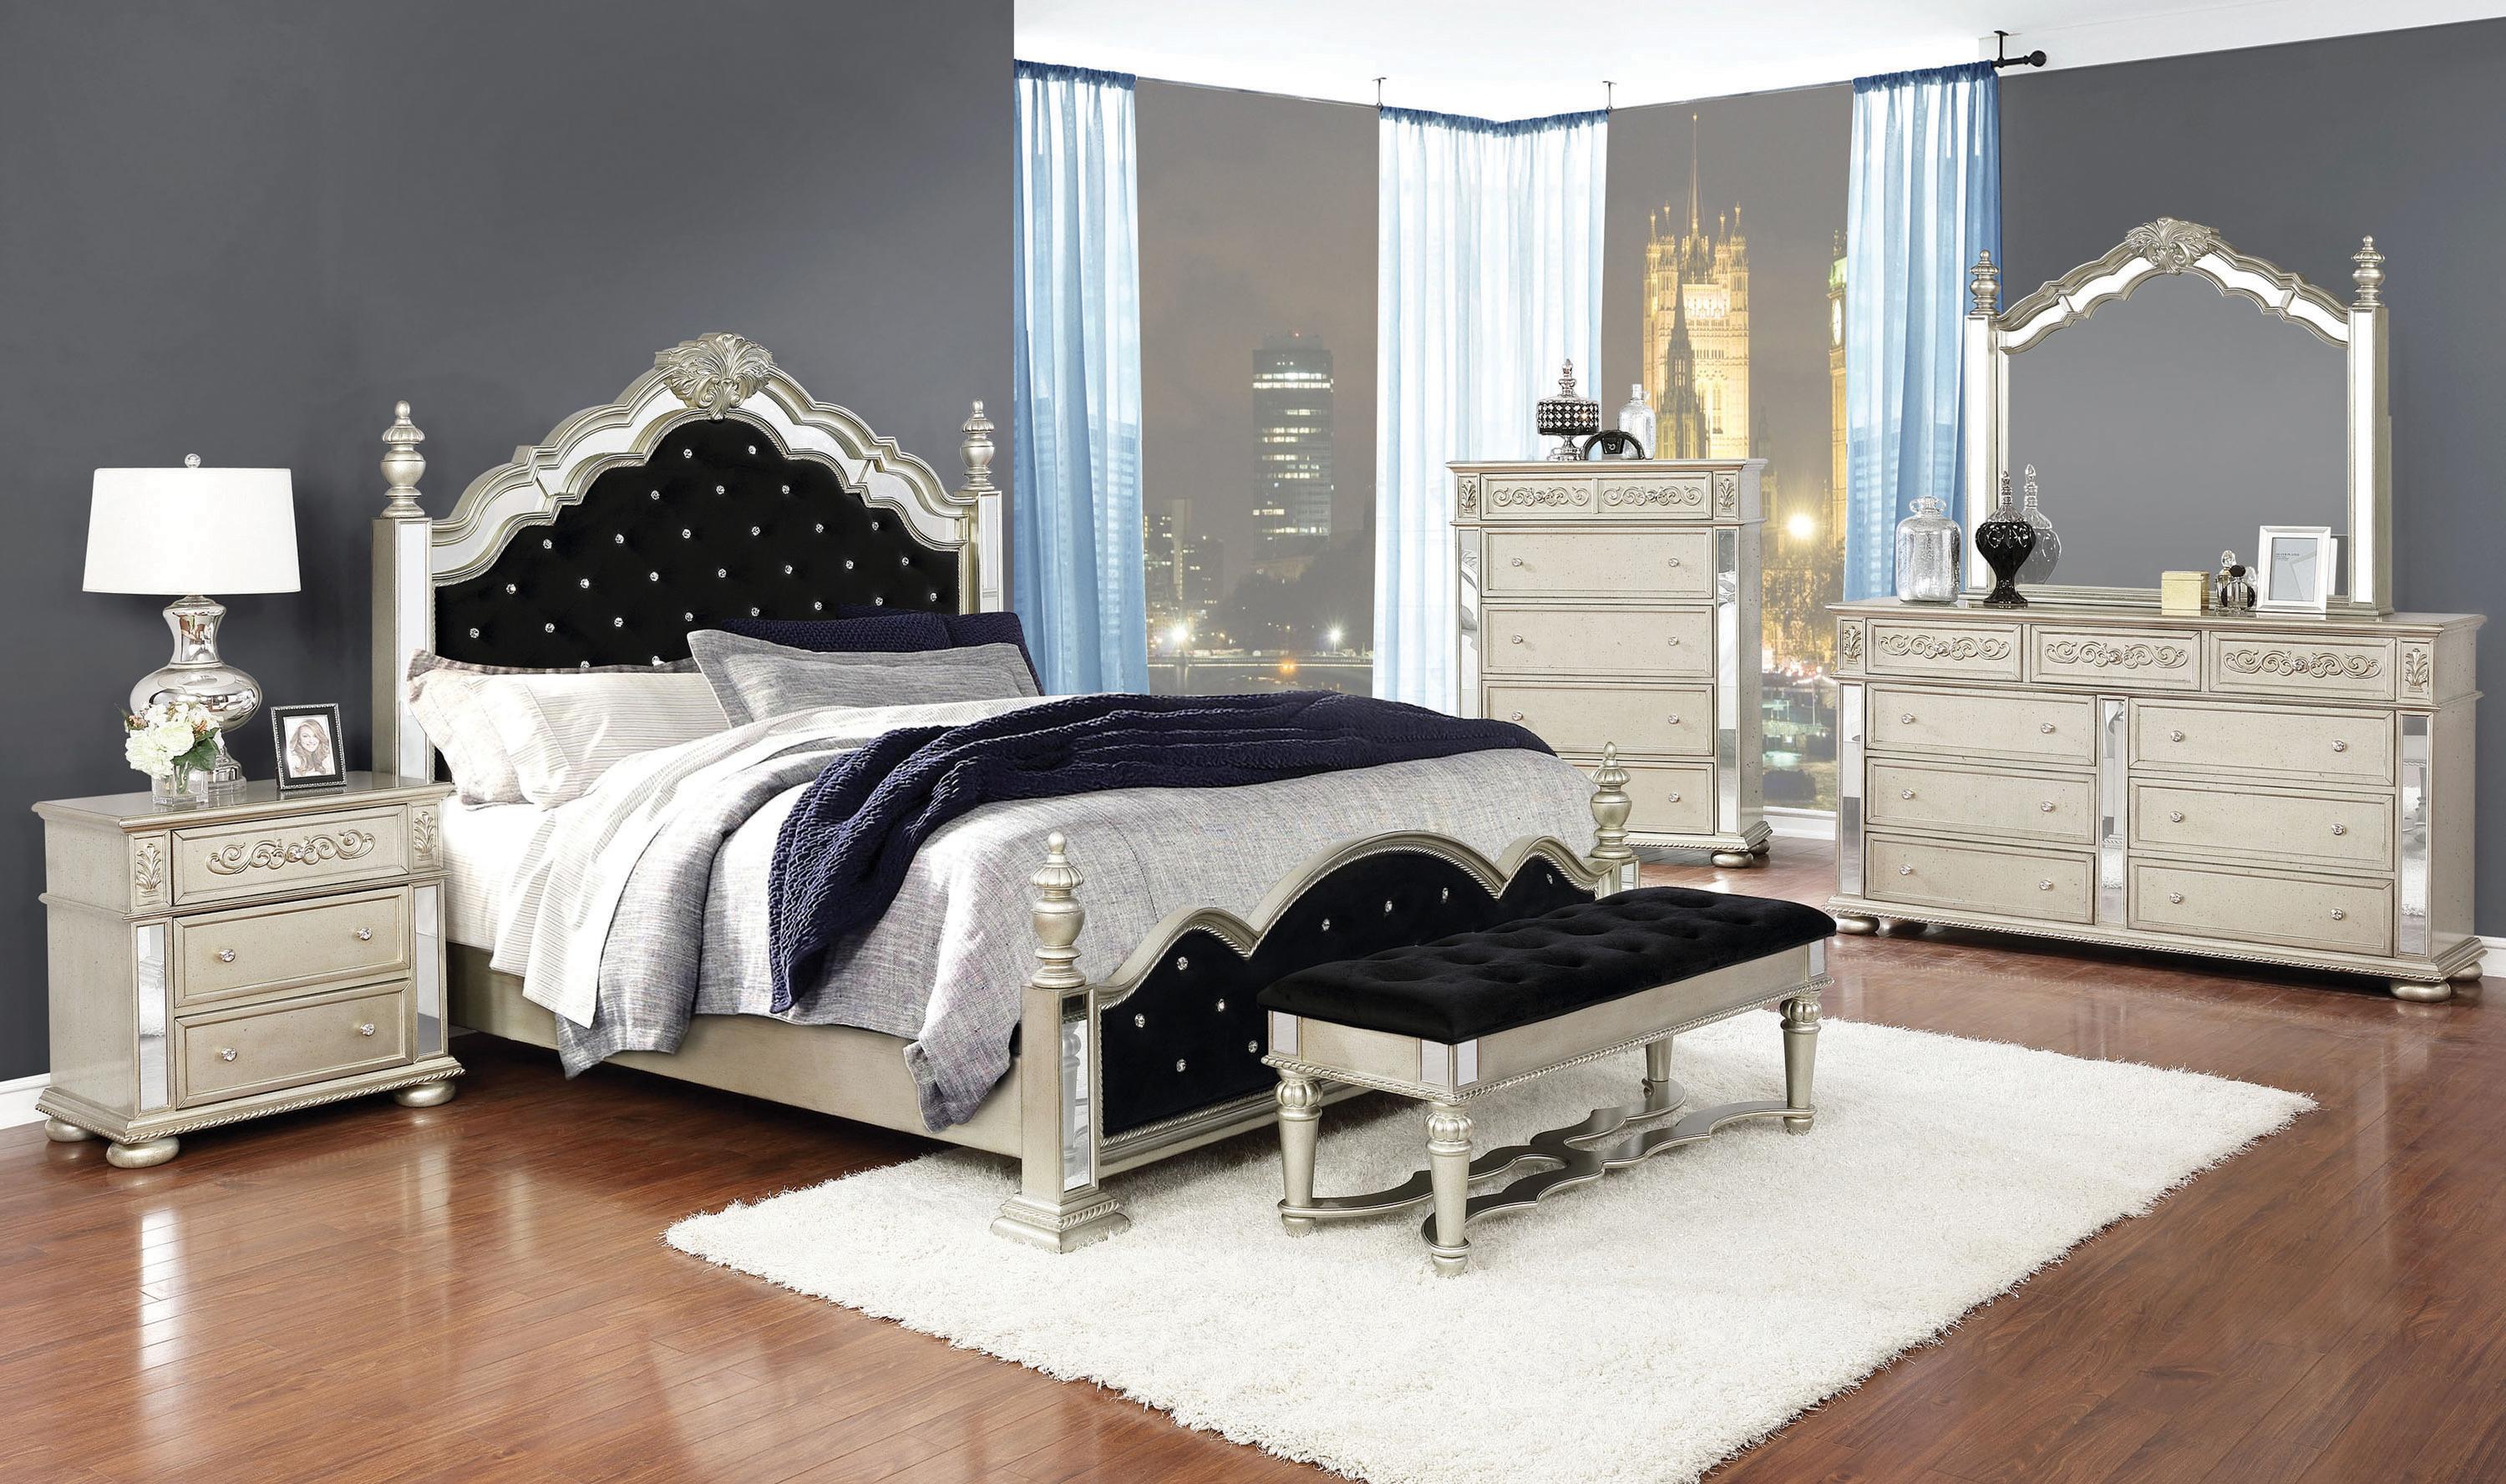 

    
Glam Metallic Platinum Wood King Bedroom Set 3pcs Coaster 222731KE Heidi
